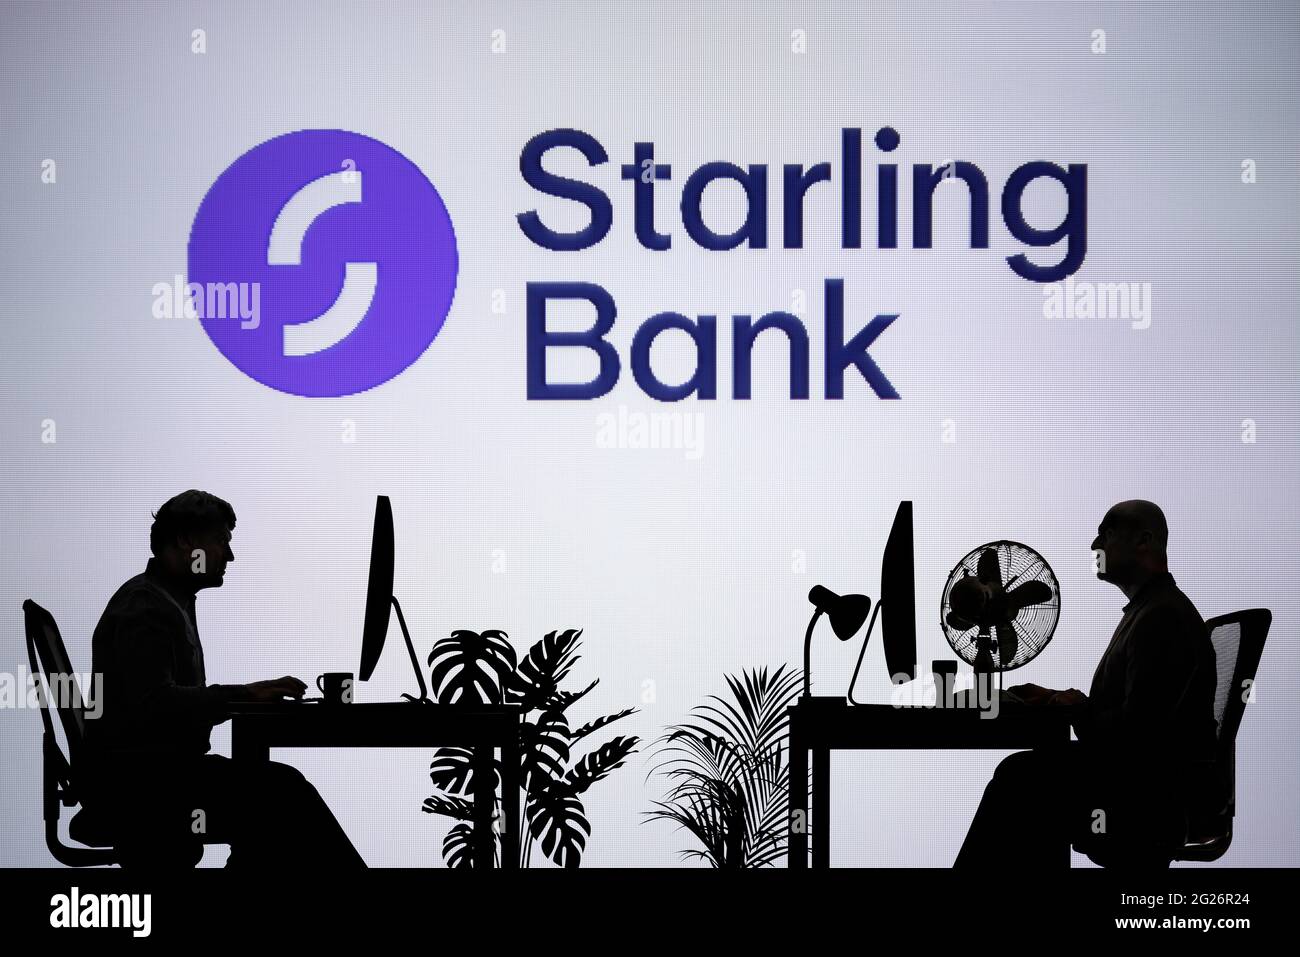 Le logo Starling Bank est visible sur un écran LED en arrière-plan tandis que deux personnes silhouetées travaillent dans un environnement de bureau (usage éditorial uniquement) Banque D'Images